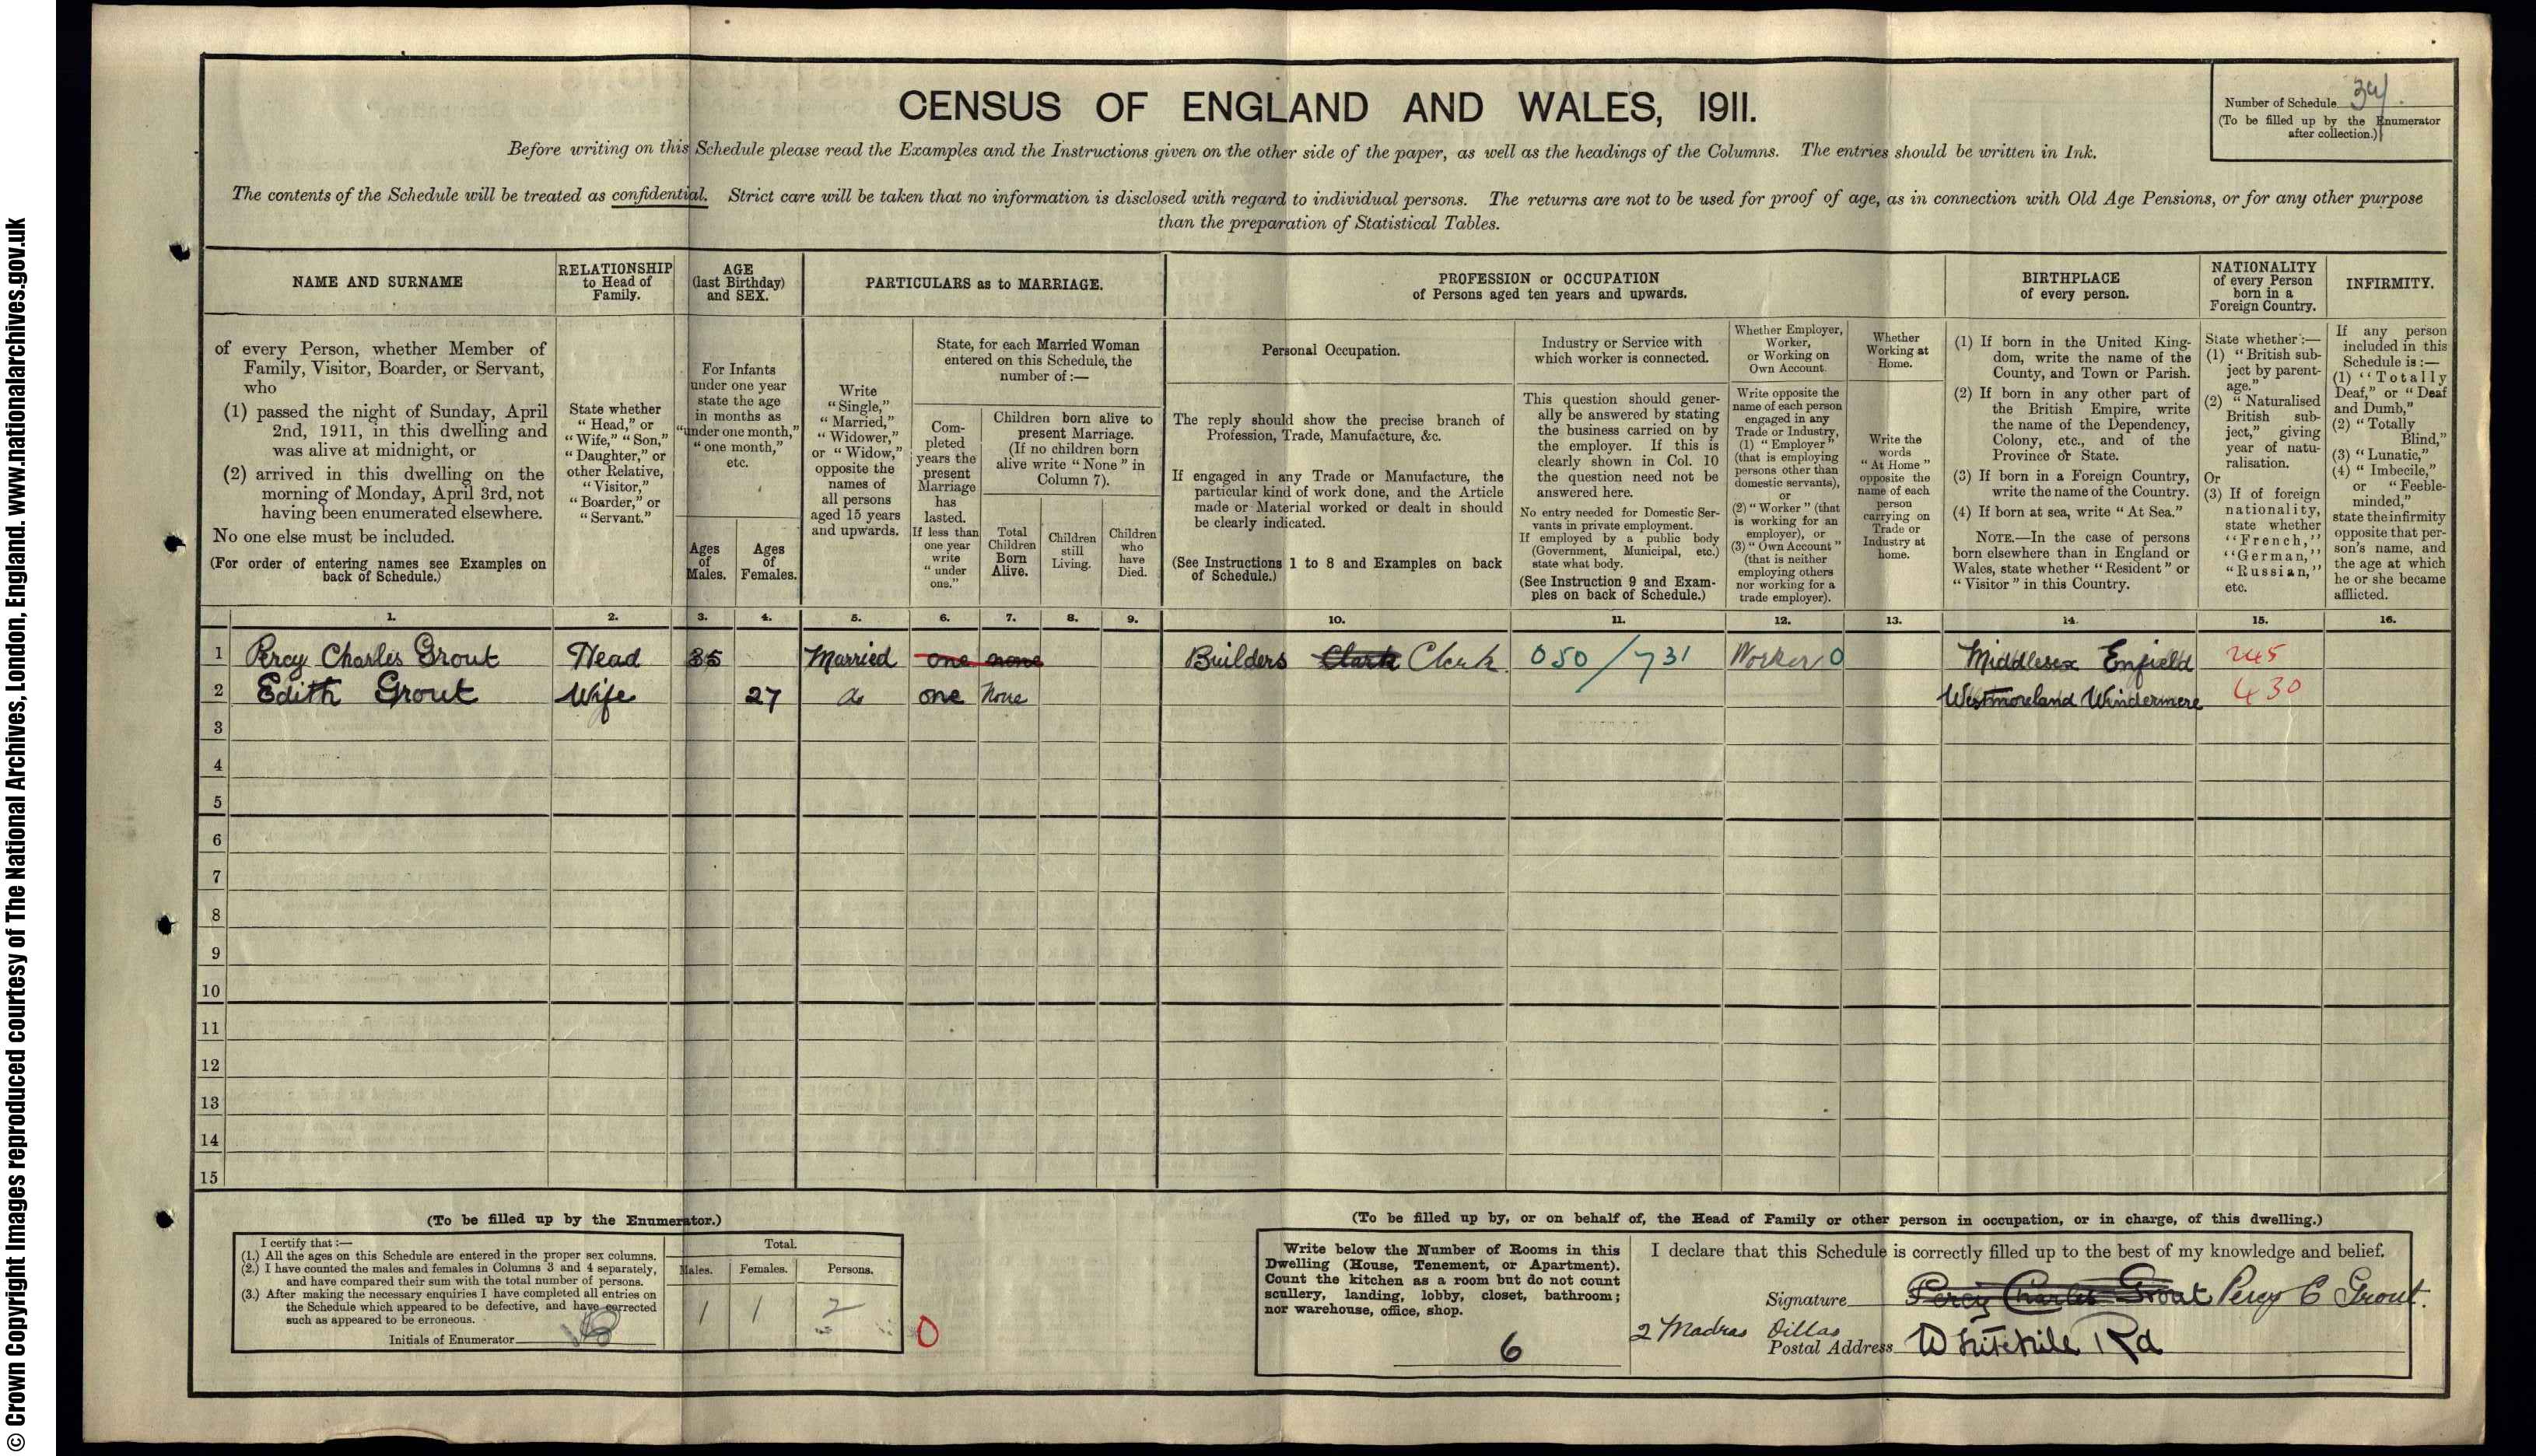 1911: 2 Madras Villas, Whitehill Road, Gravesend, Kent